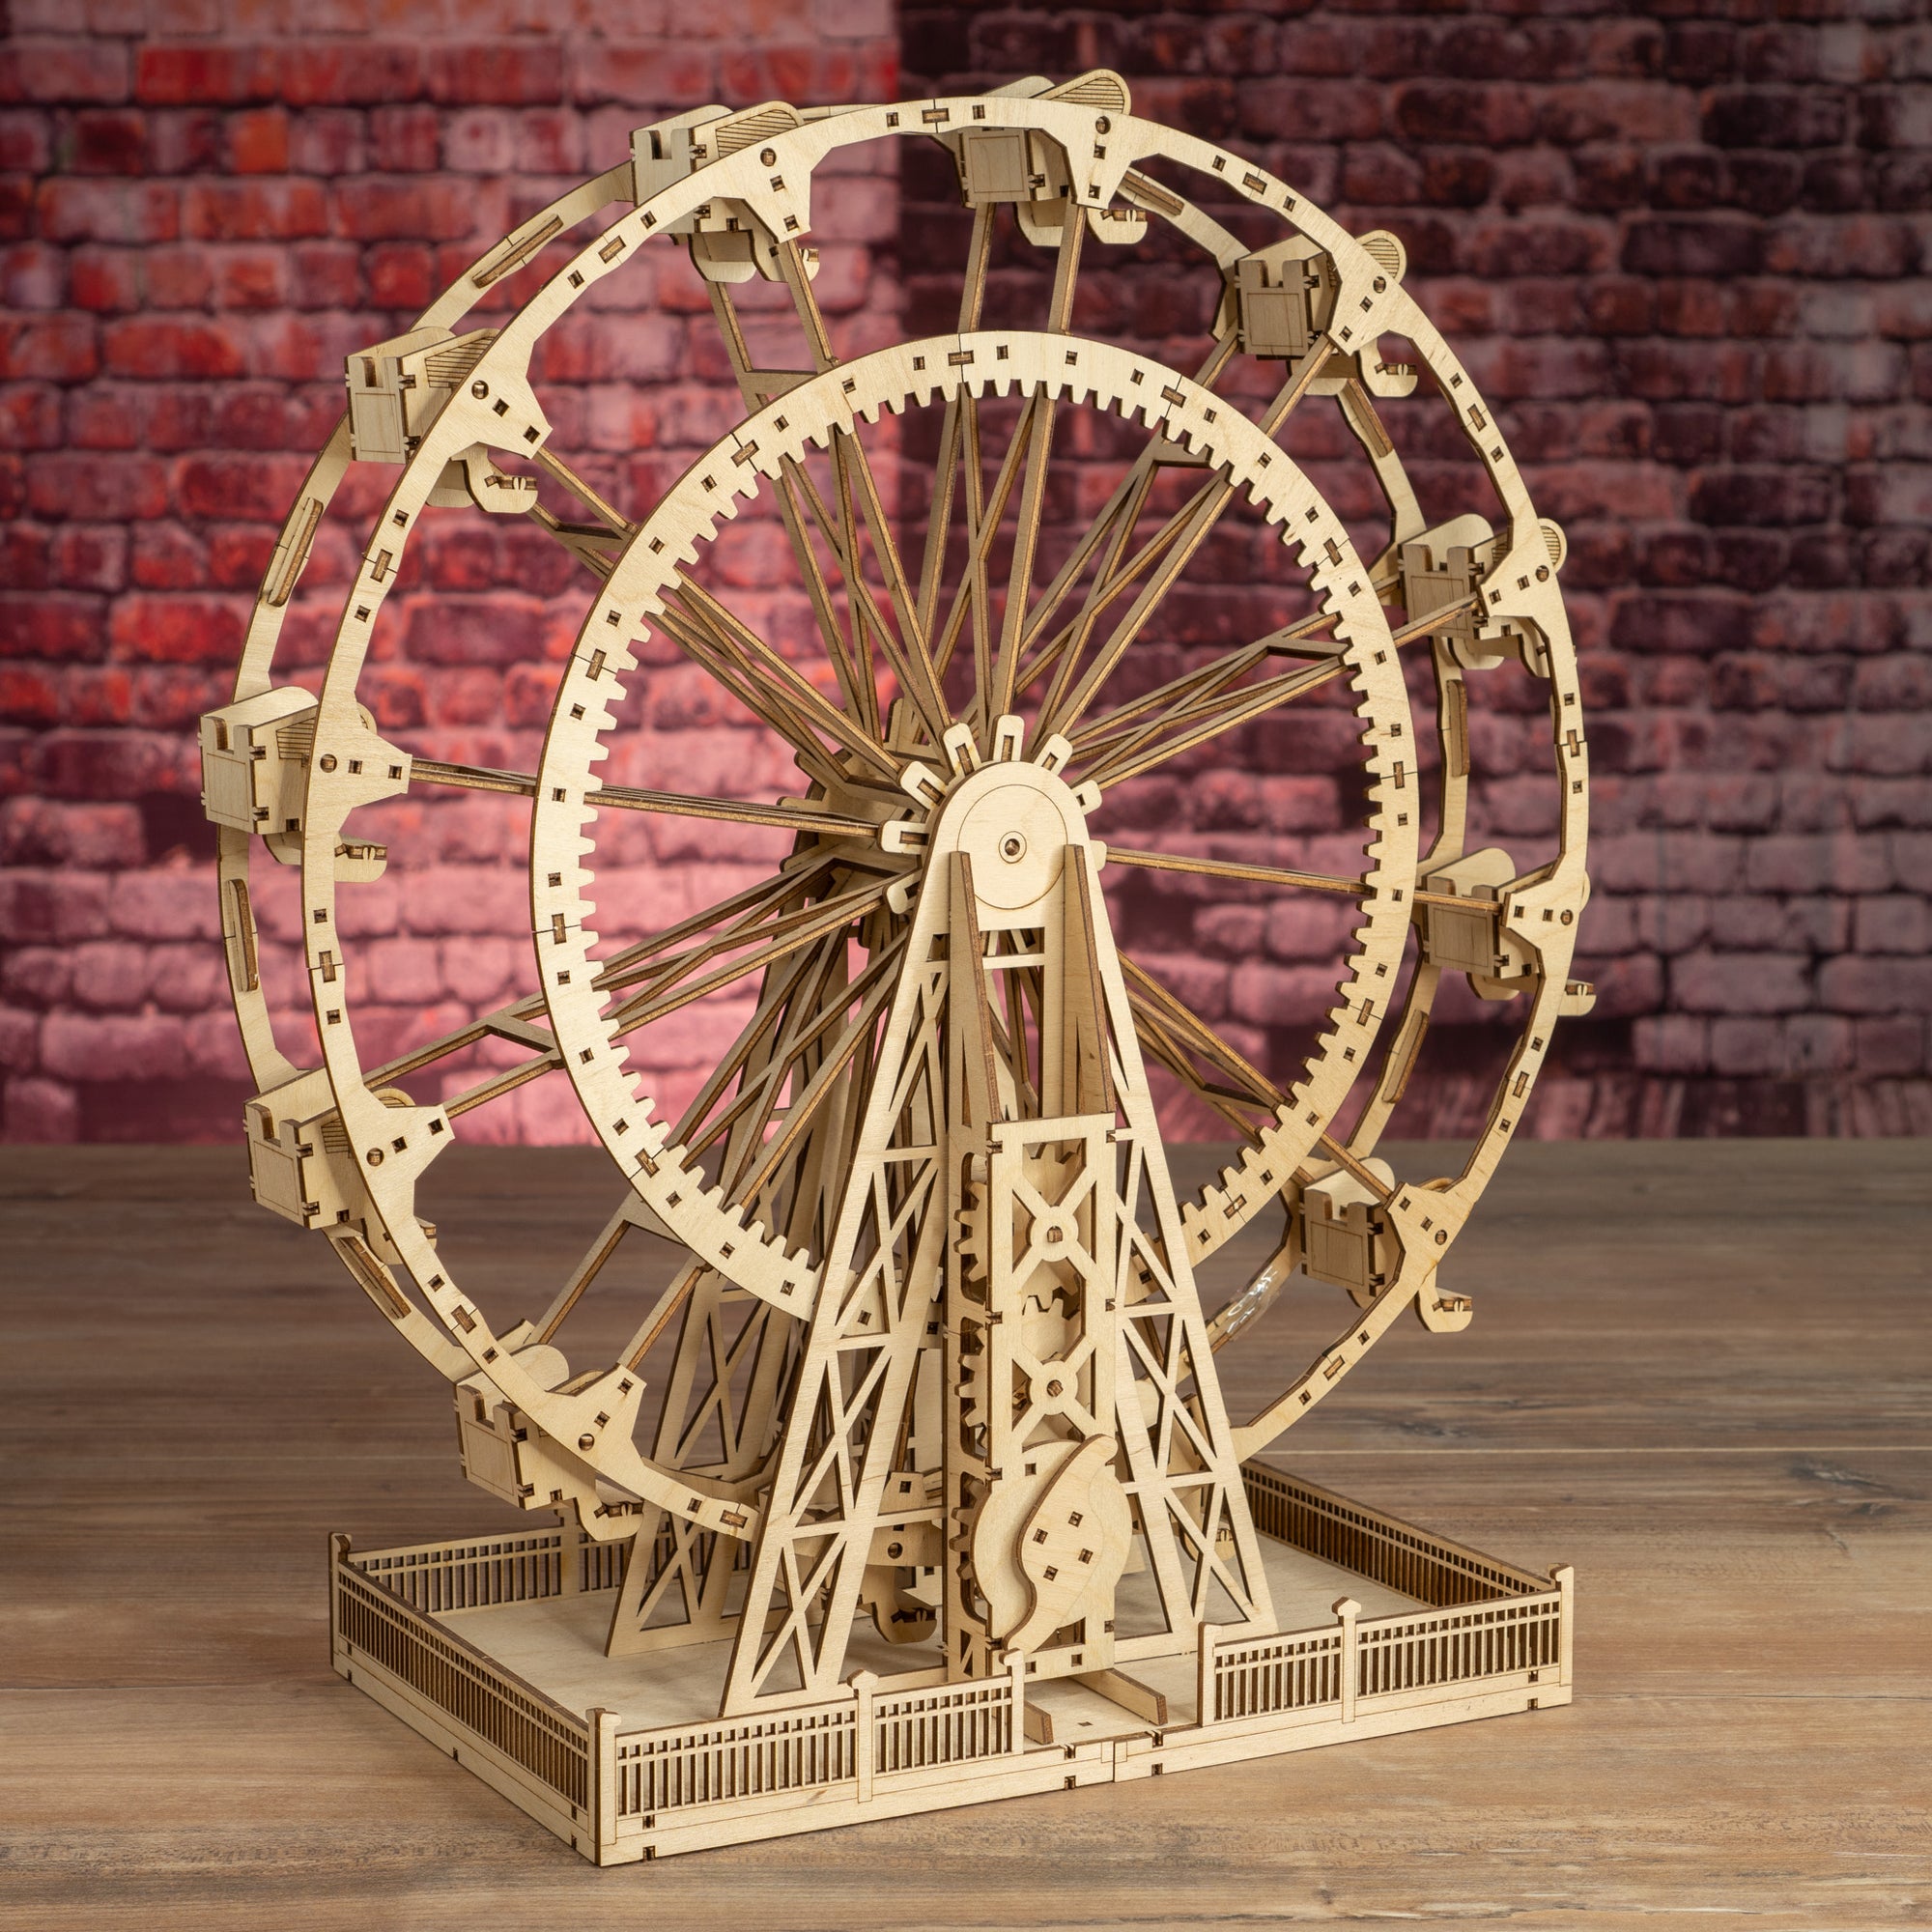 The Ferris Wheel Cutout